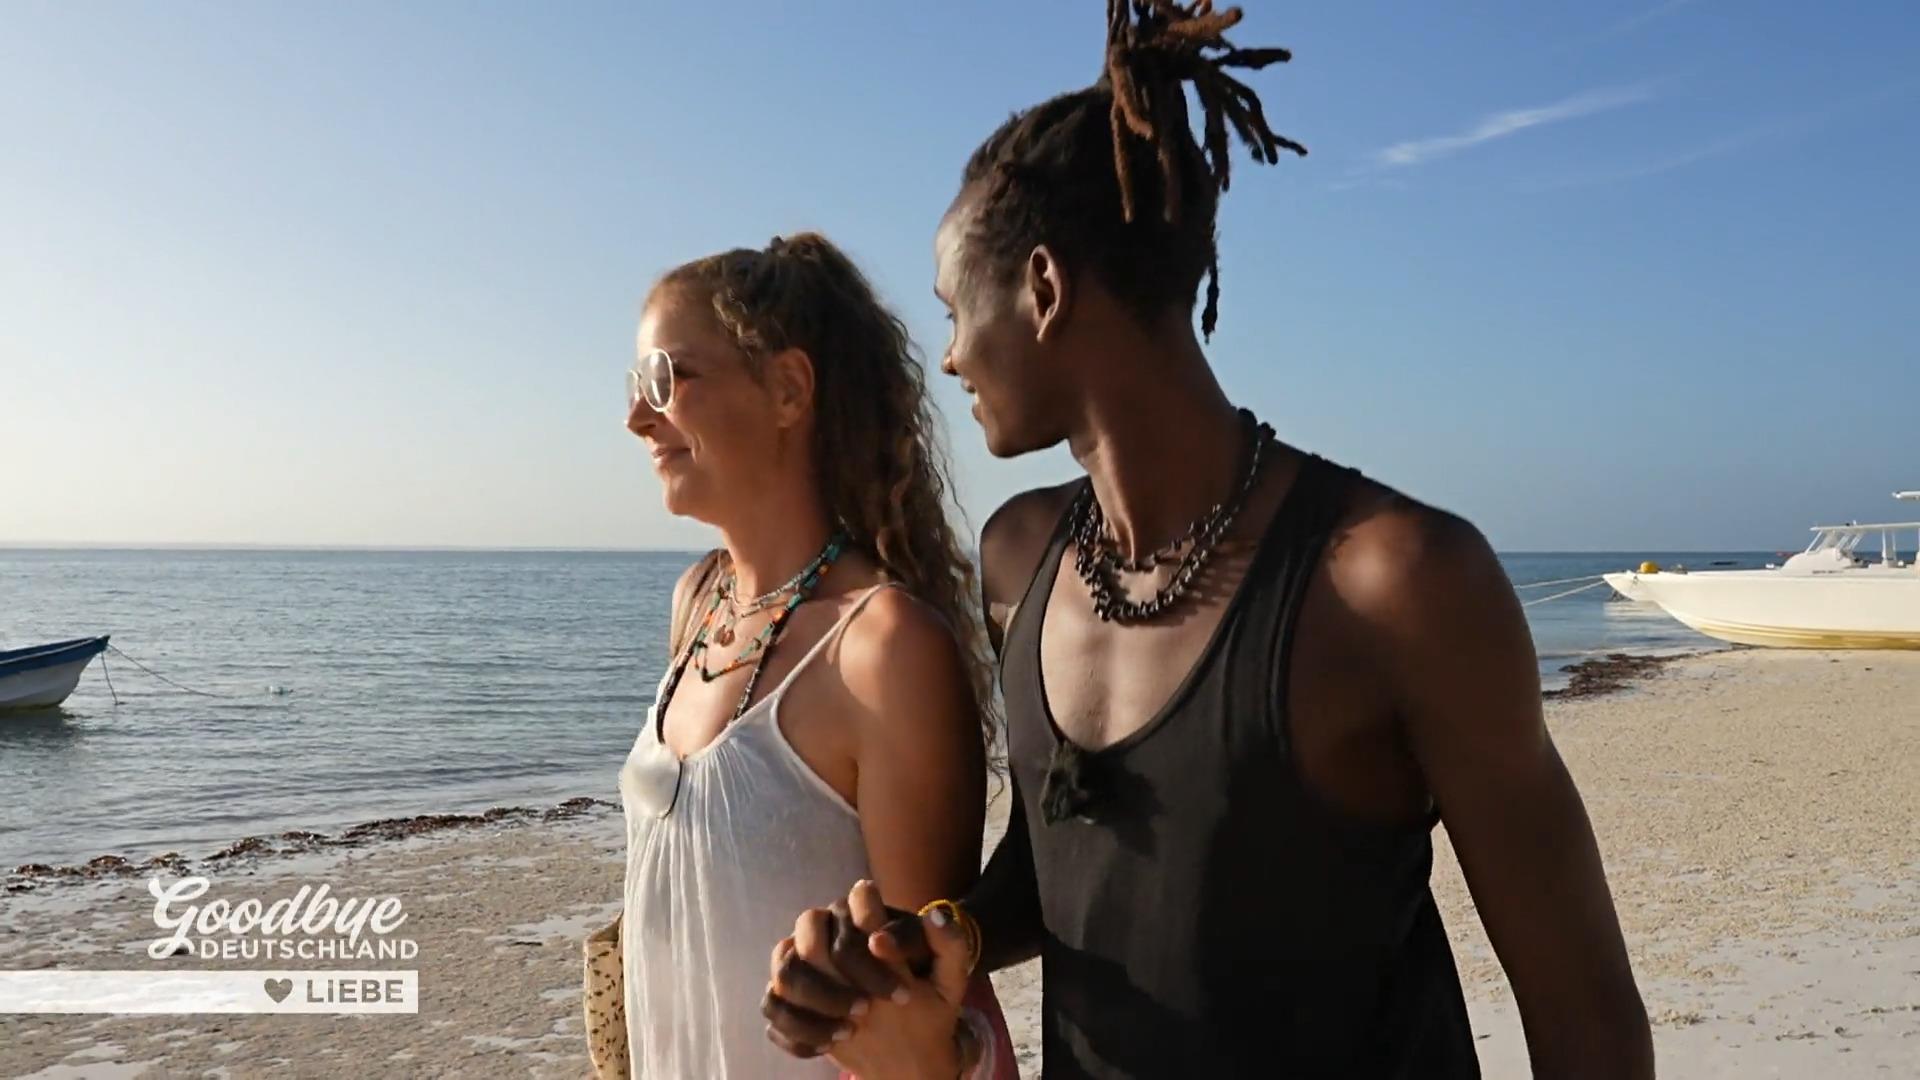 Lefki znalazła miłość na Zanzibarze.  I zaręczył się!